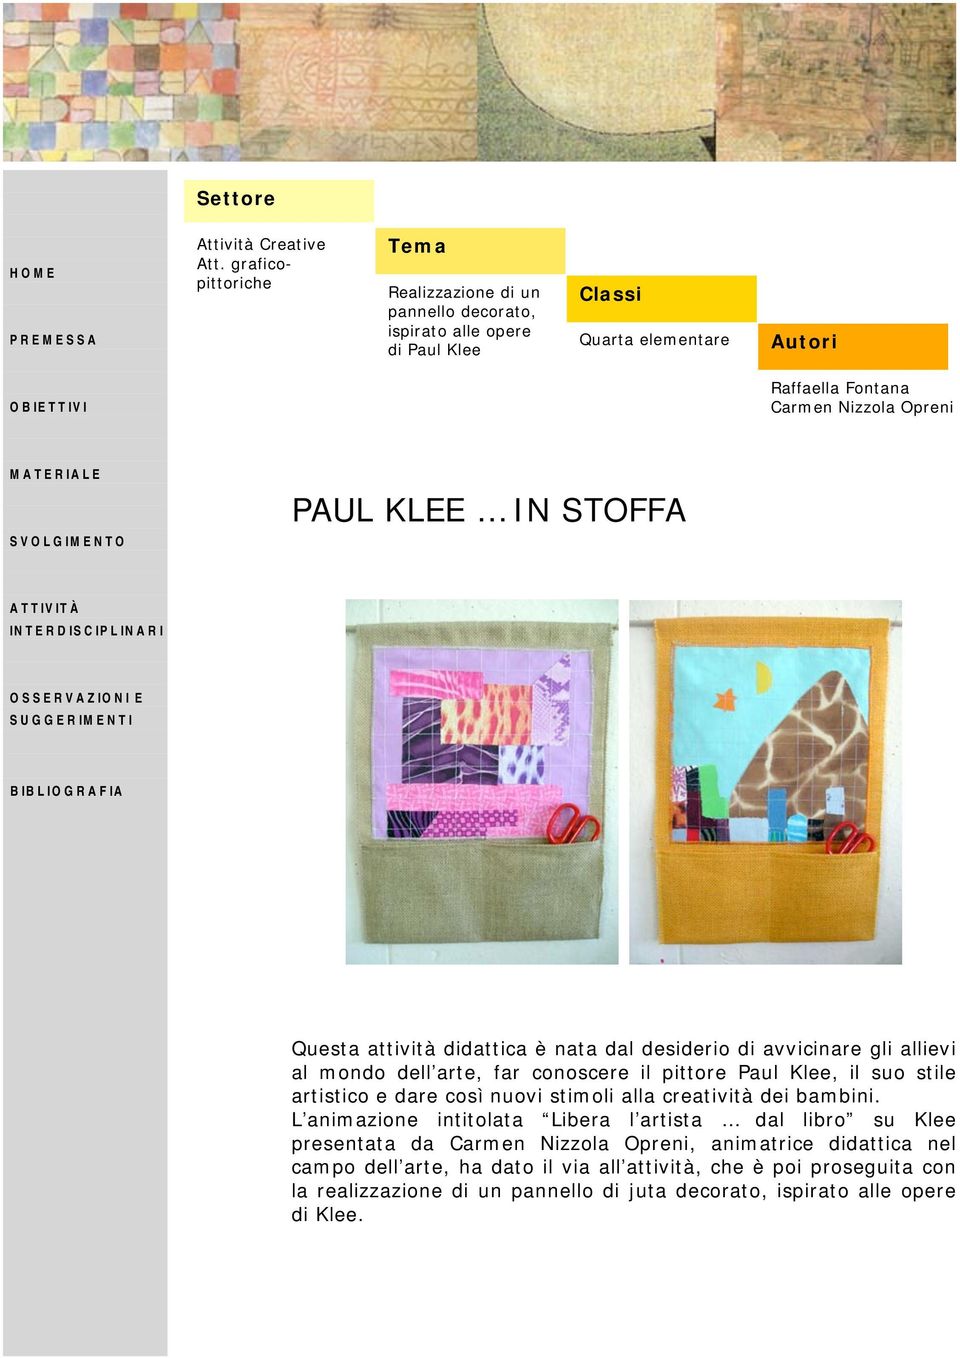 KLEE IN STOFFA Questa attività didattica è nata dal desiderio di avvicinare gli allievi al mondo dell arte, far conoscere il pittore Paul Klee, il suo stile artistico e dare